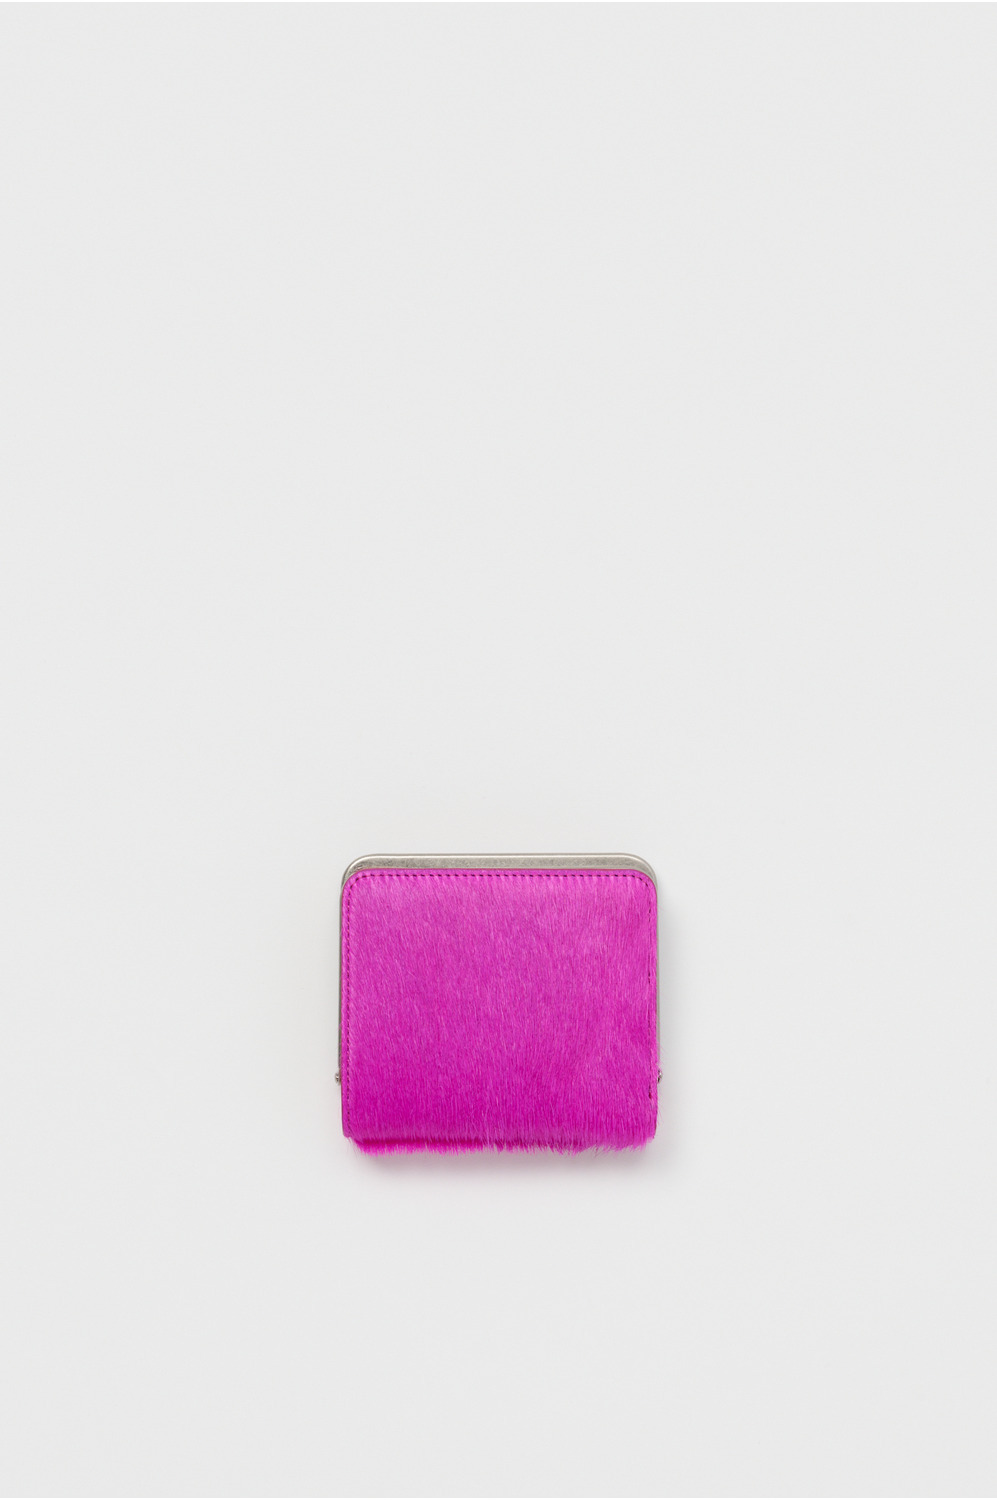 hairy snap wallet 詳細画像 pink purple 1